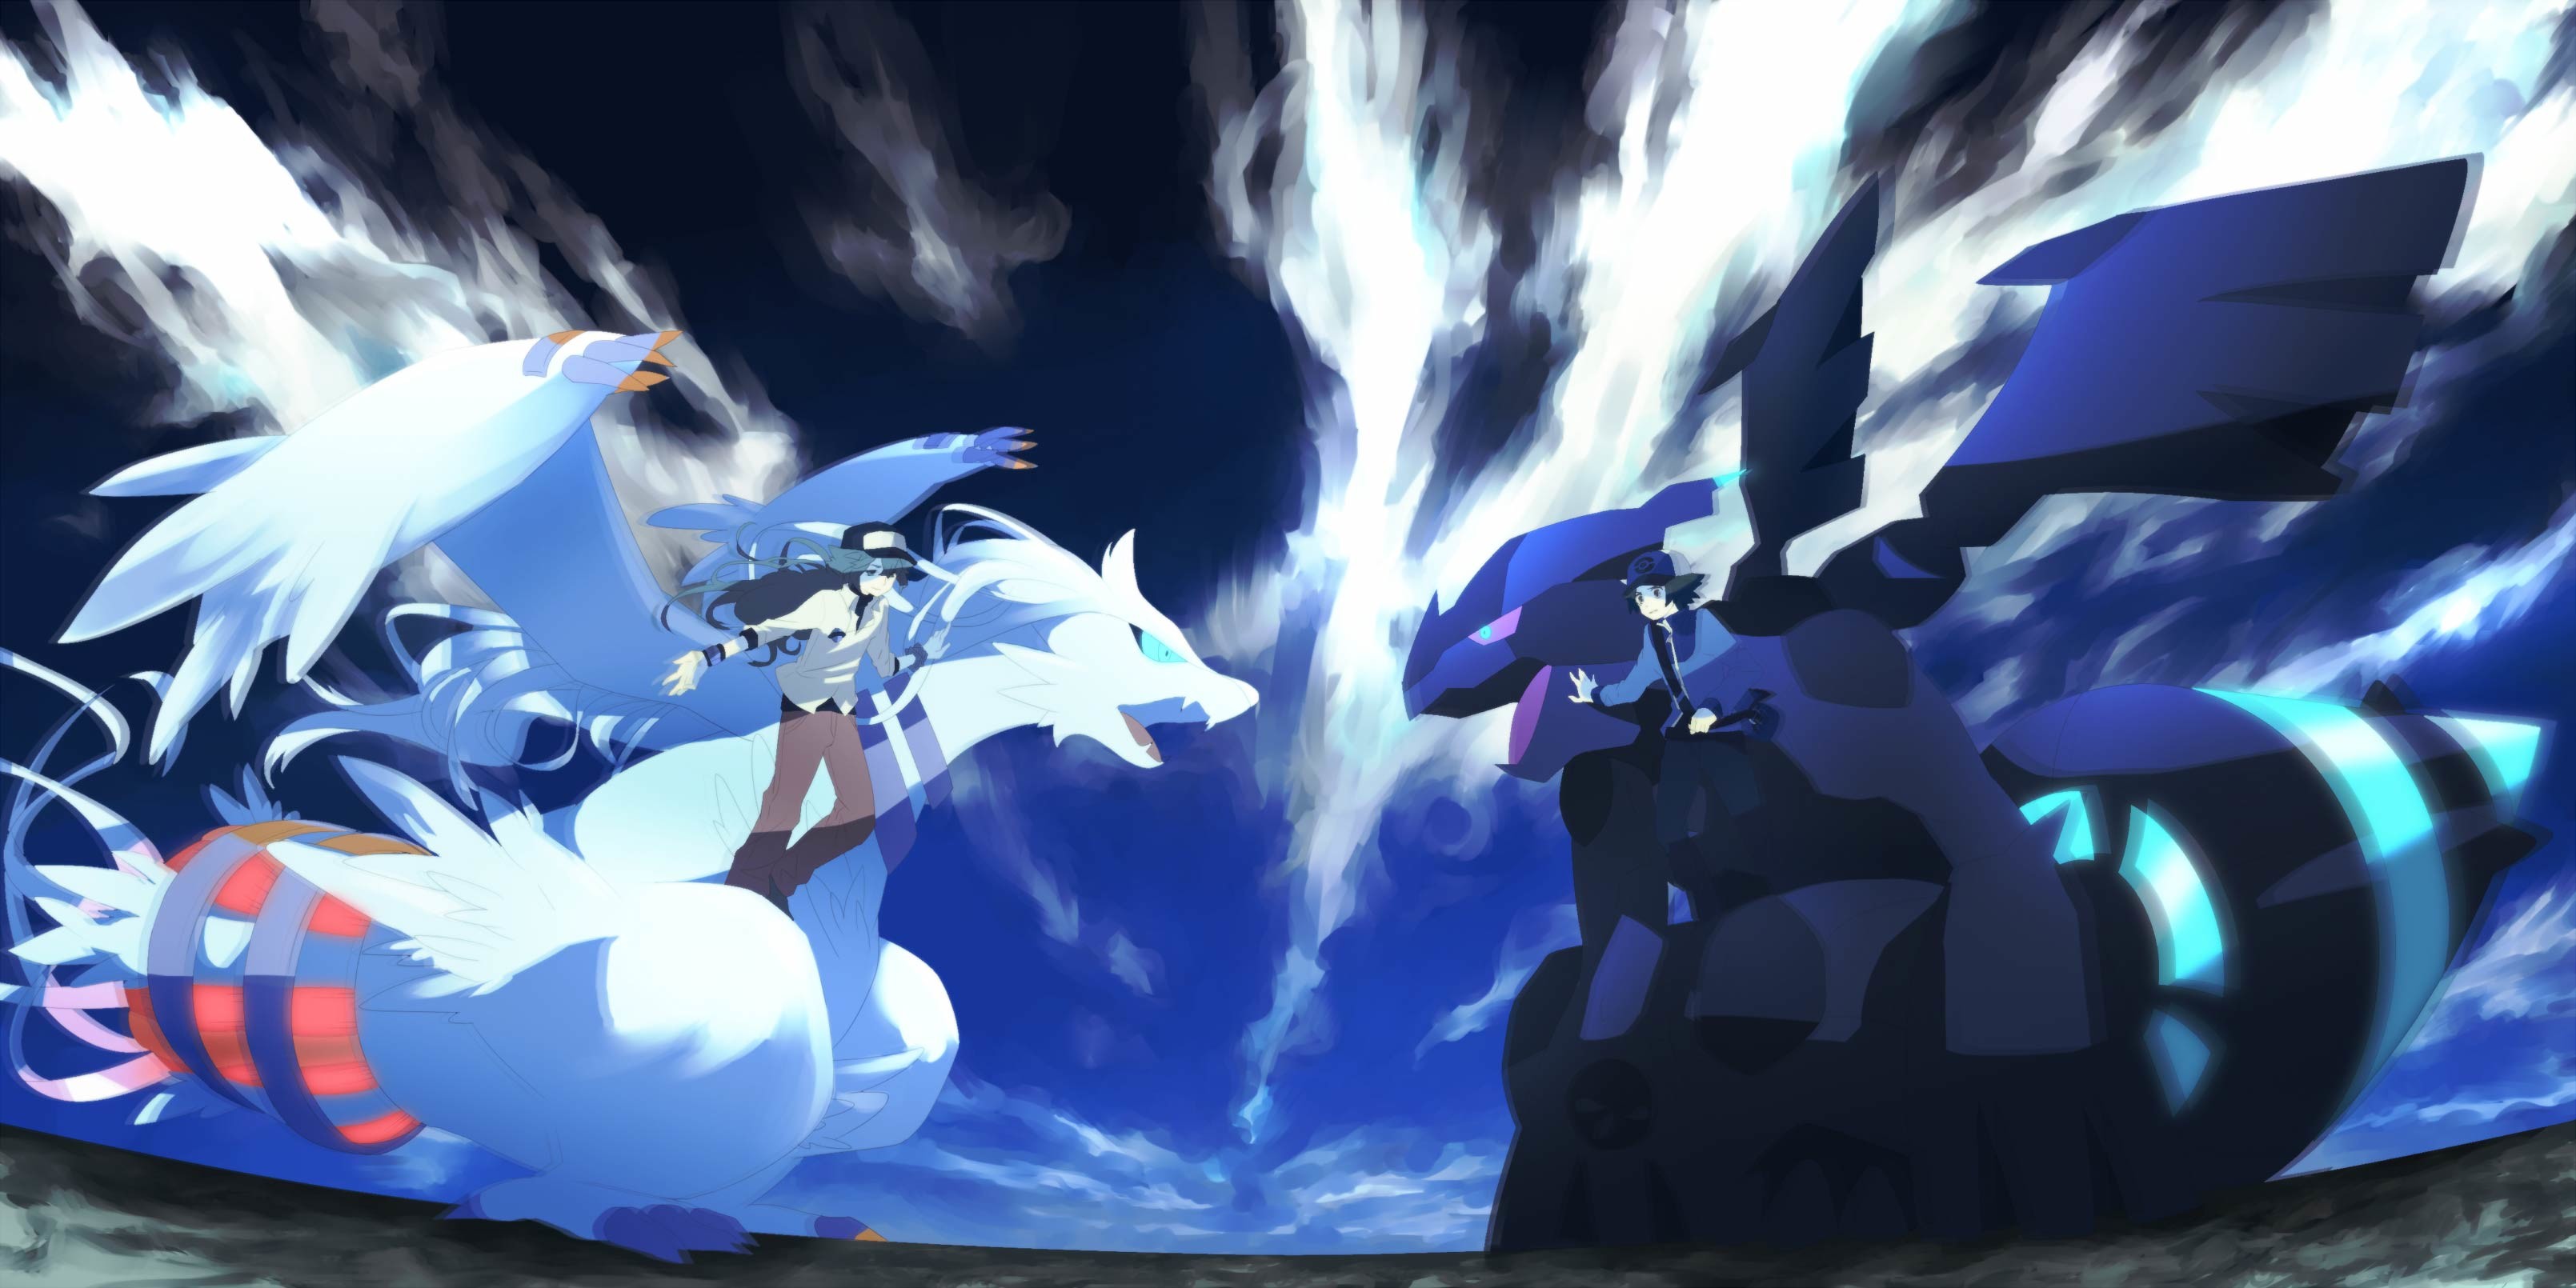 Mega Charizard X vs Dragonite: Which Pokemon will reign supreme in